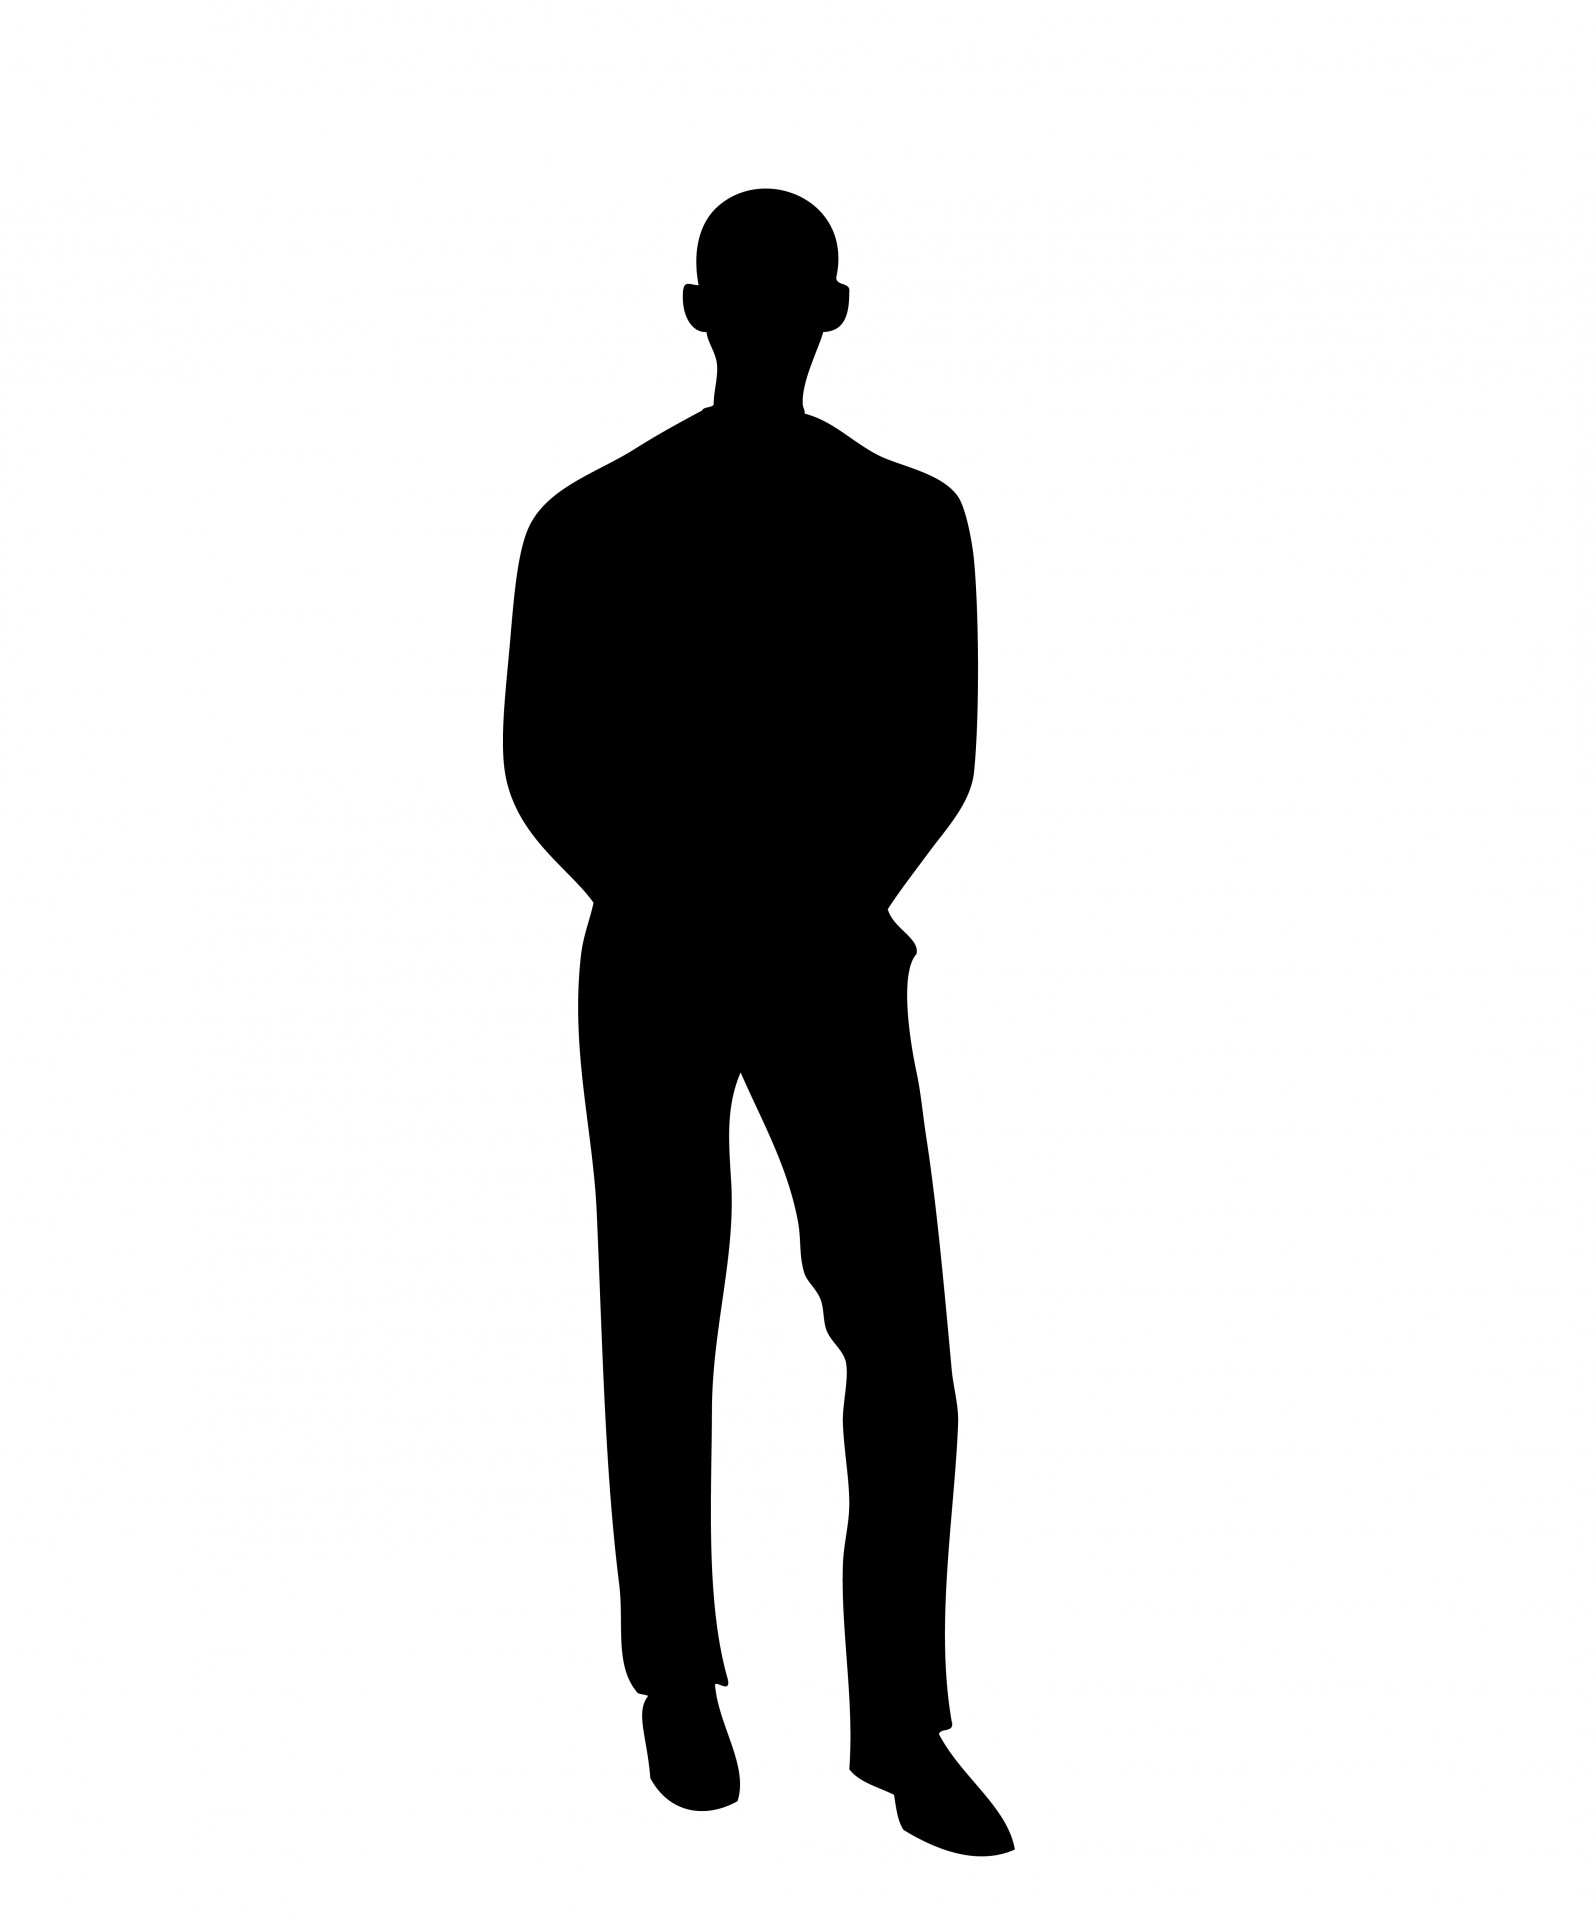 Man in Black Silhouette Immagine gratis - Public Domain Pictures